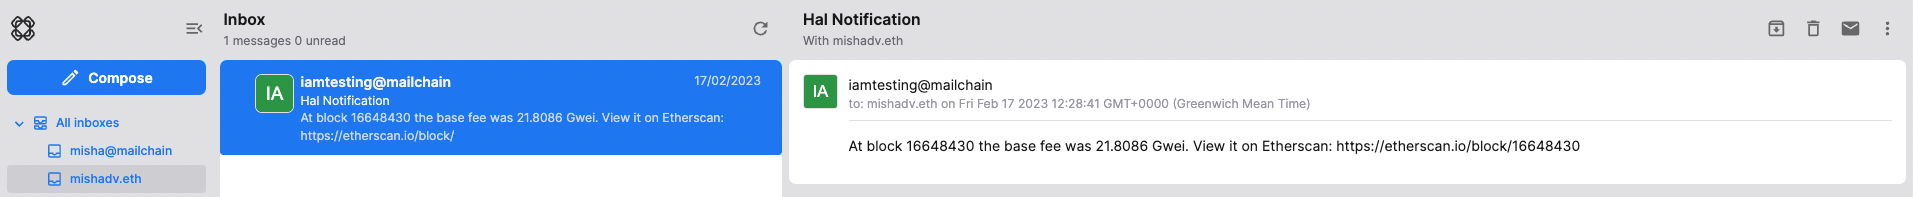 hal notification in mailchain inbox